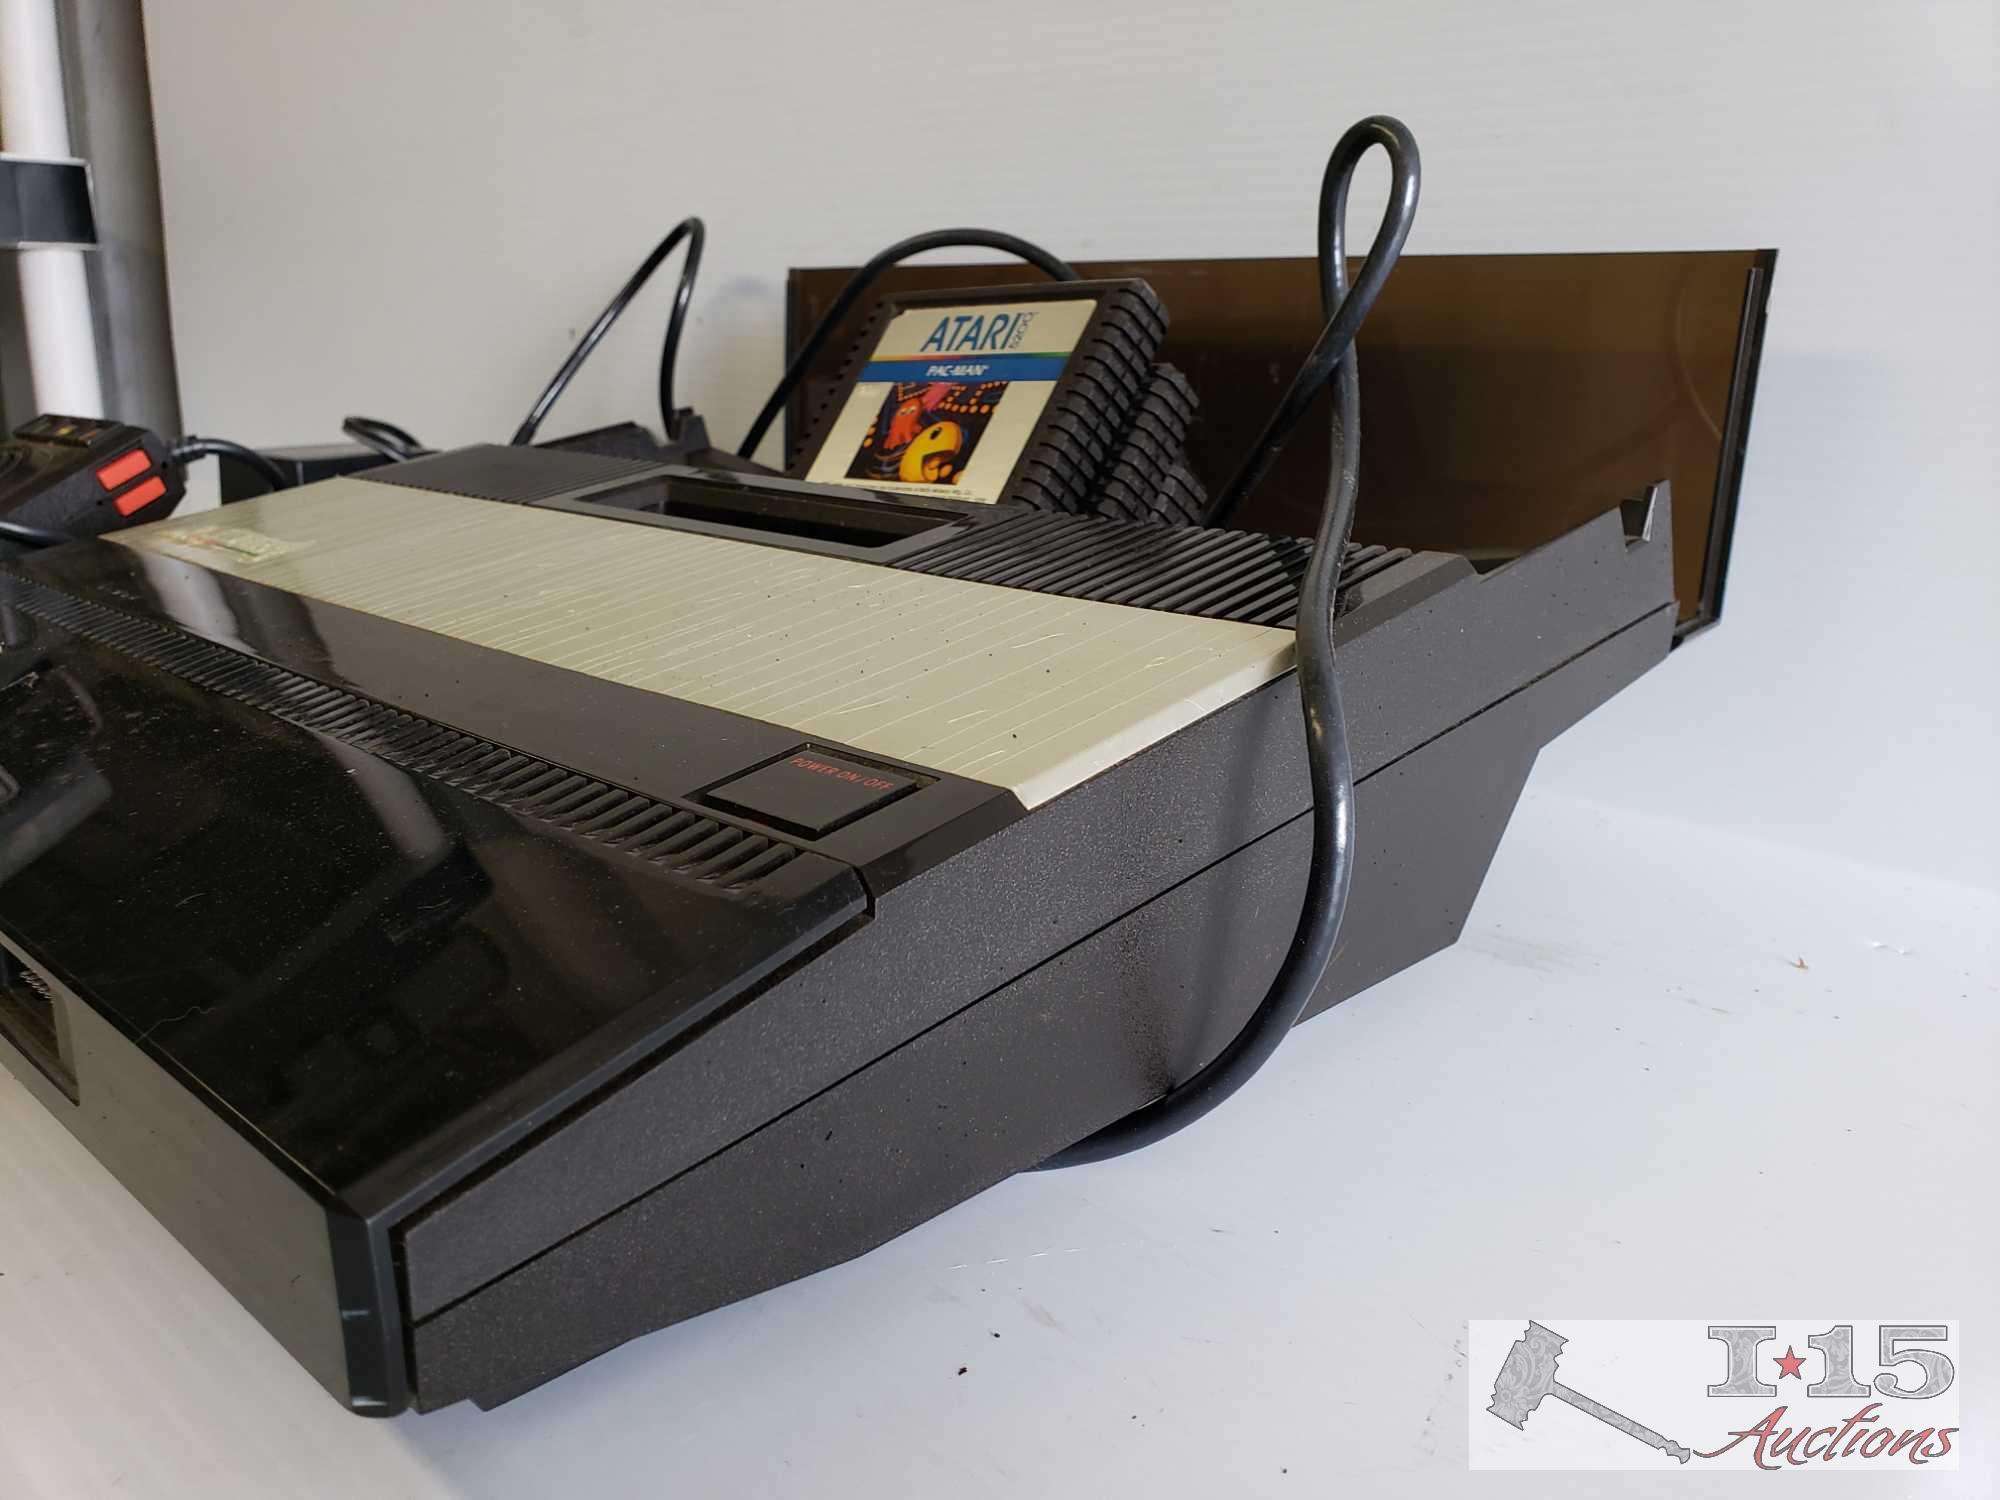 Atari 5200 with 2 Joysticks and Games